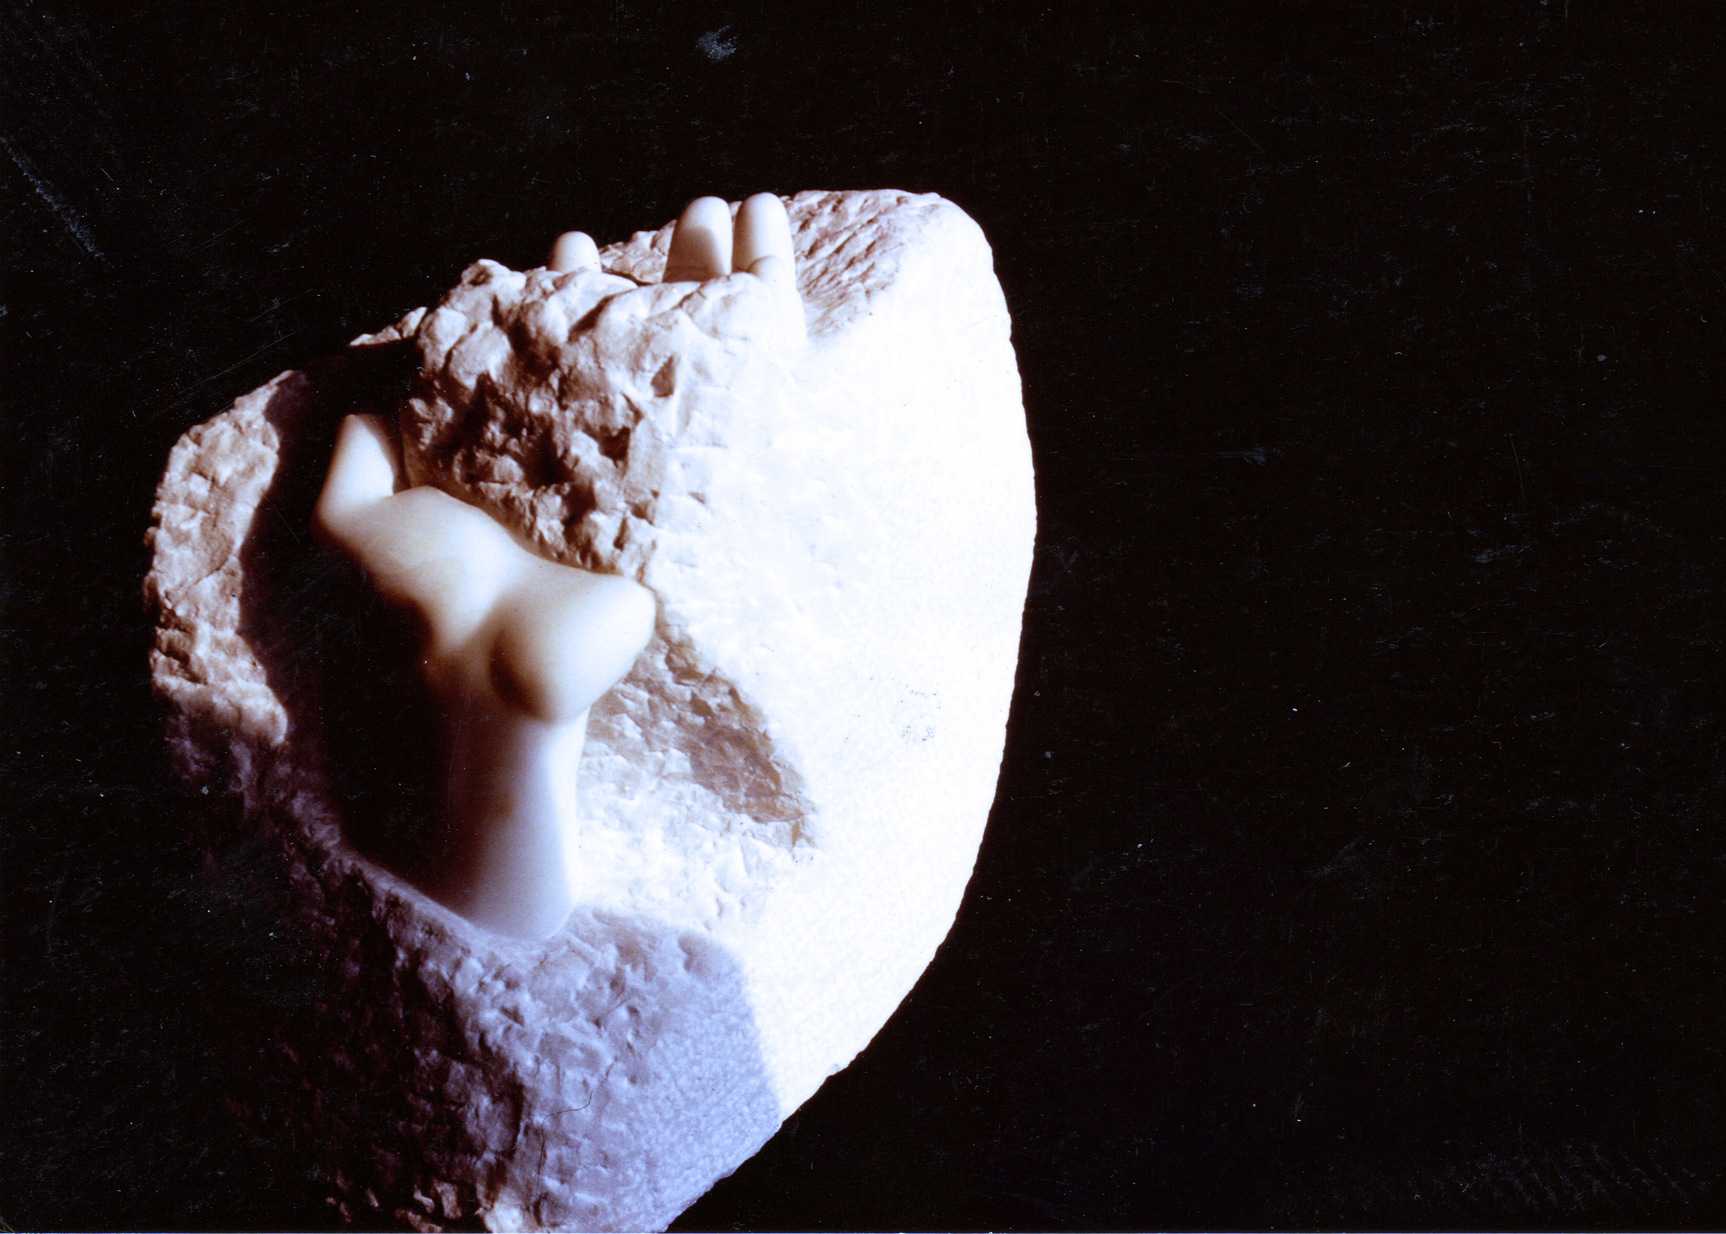 2 Etude de main, 1983, marbre statuaire de Carrare, h 27 cm, collection privée